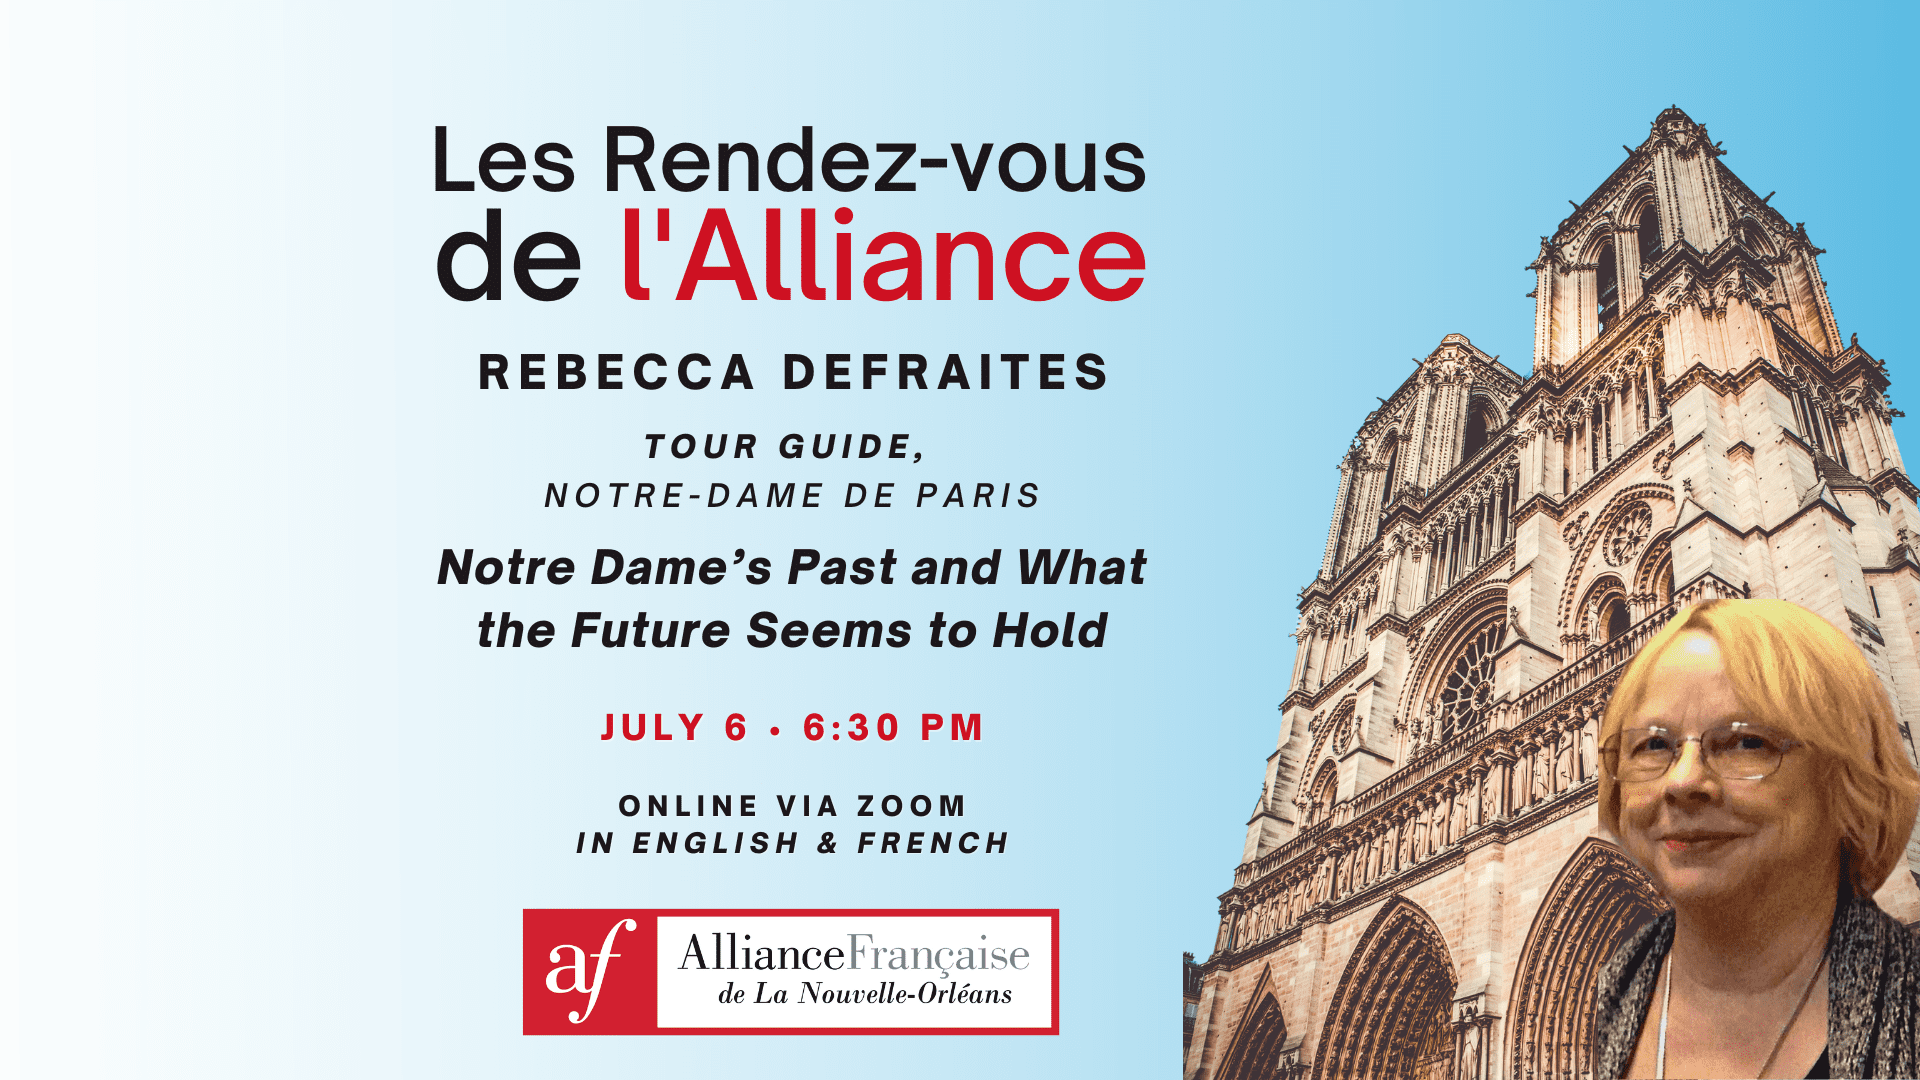 Rendez-vous de l'Alliance with Rebecca DeFraites, Tour Guide at Notre-Dame de Paris